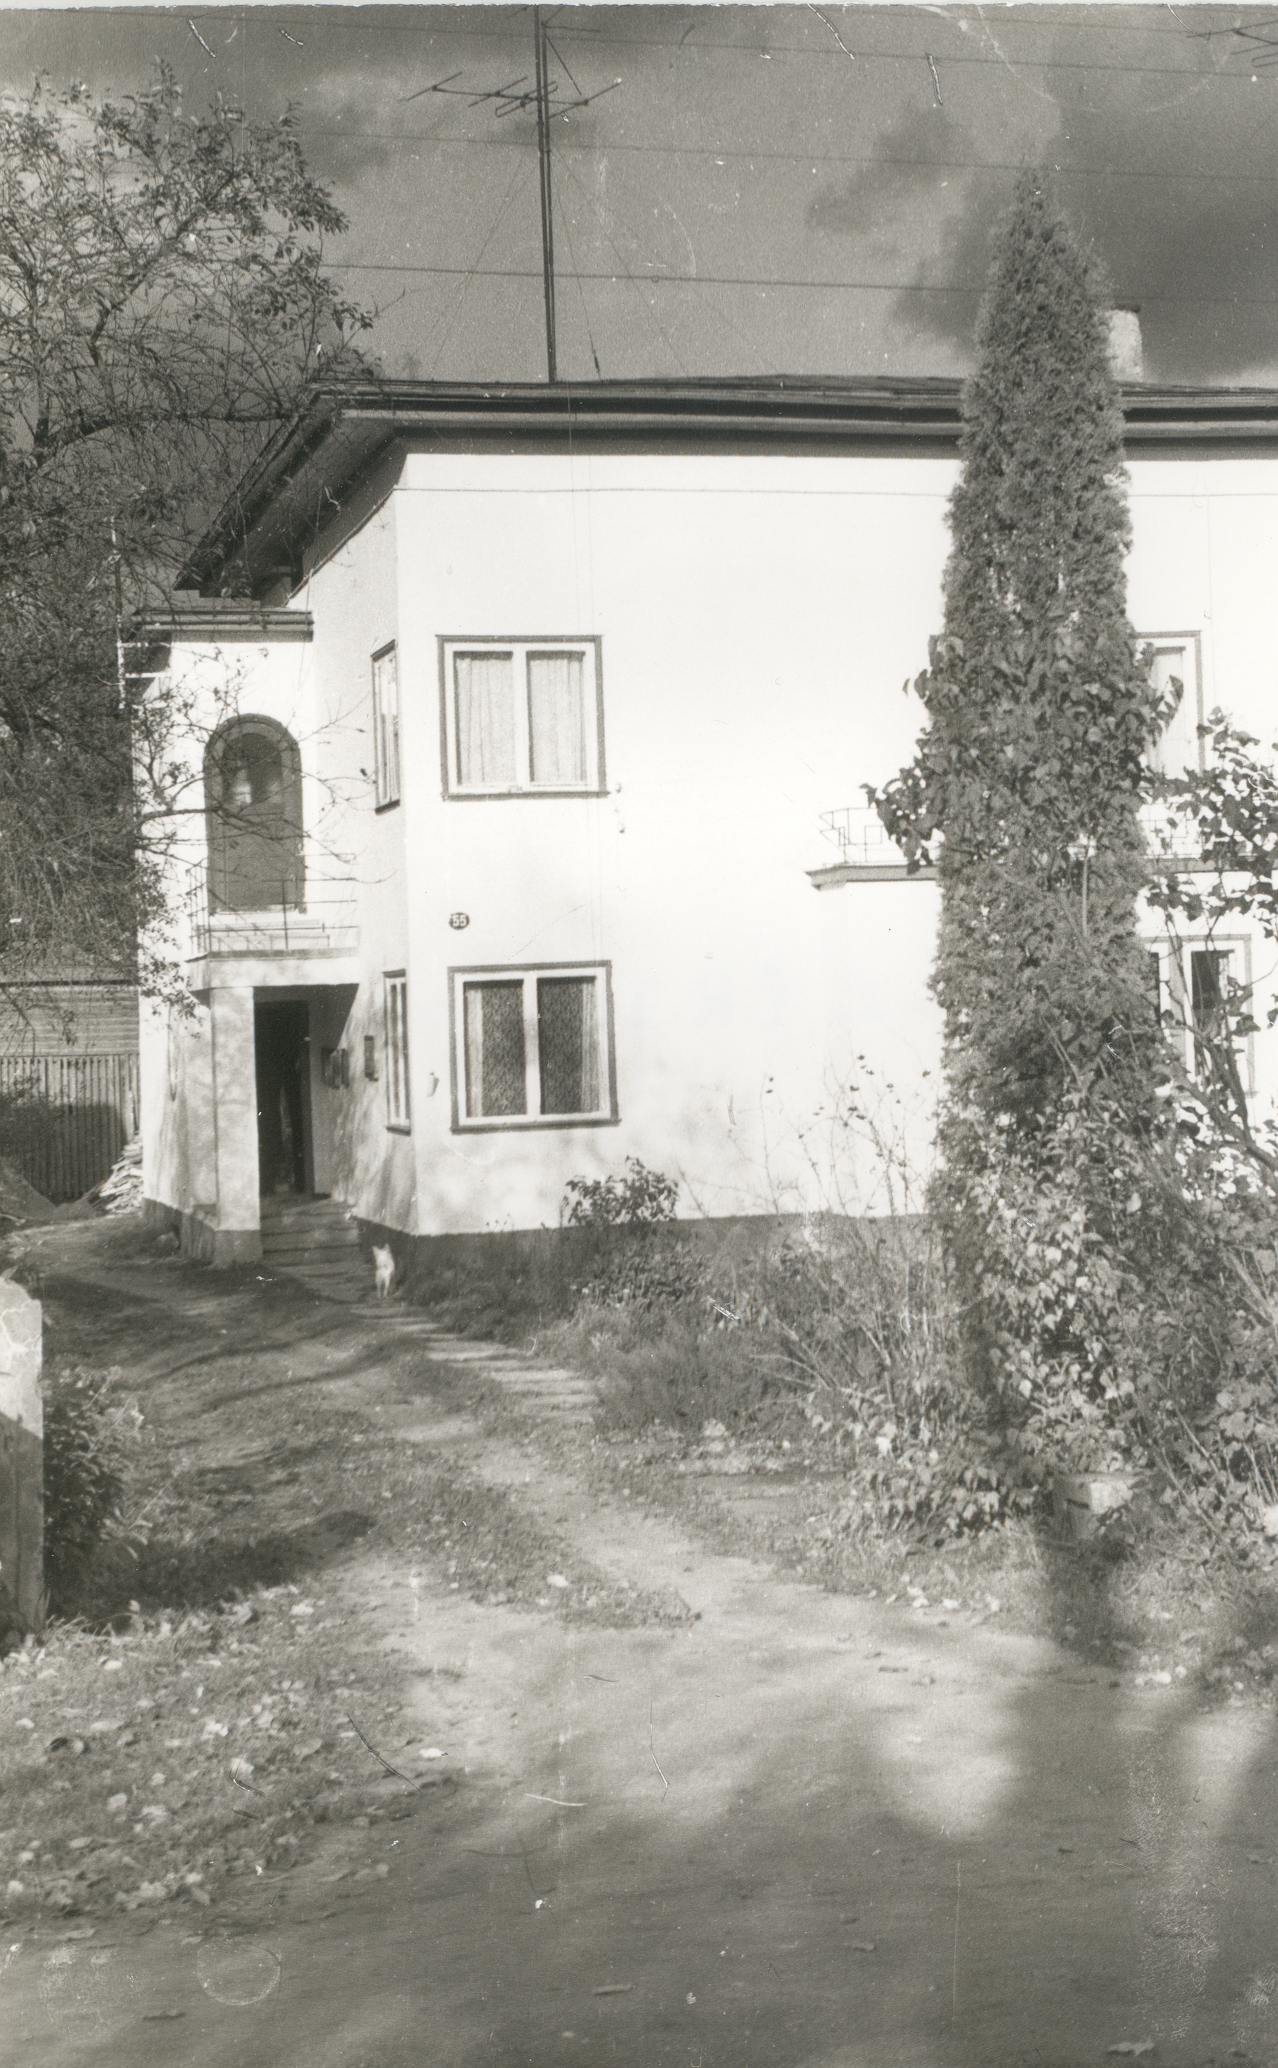 FR. Tuglase residence in Viljandi in spring 1944